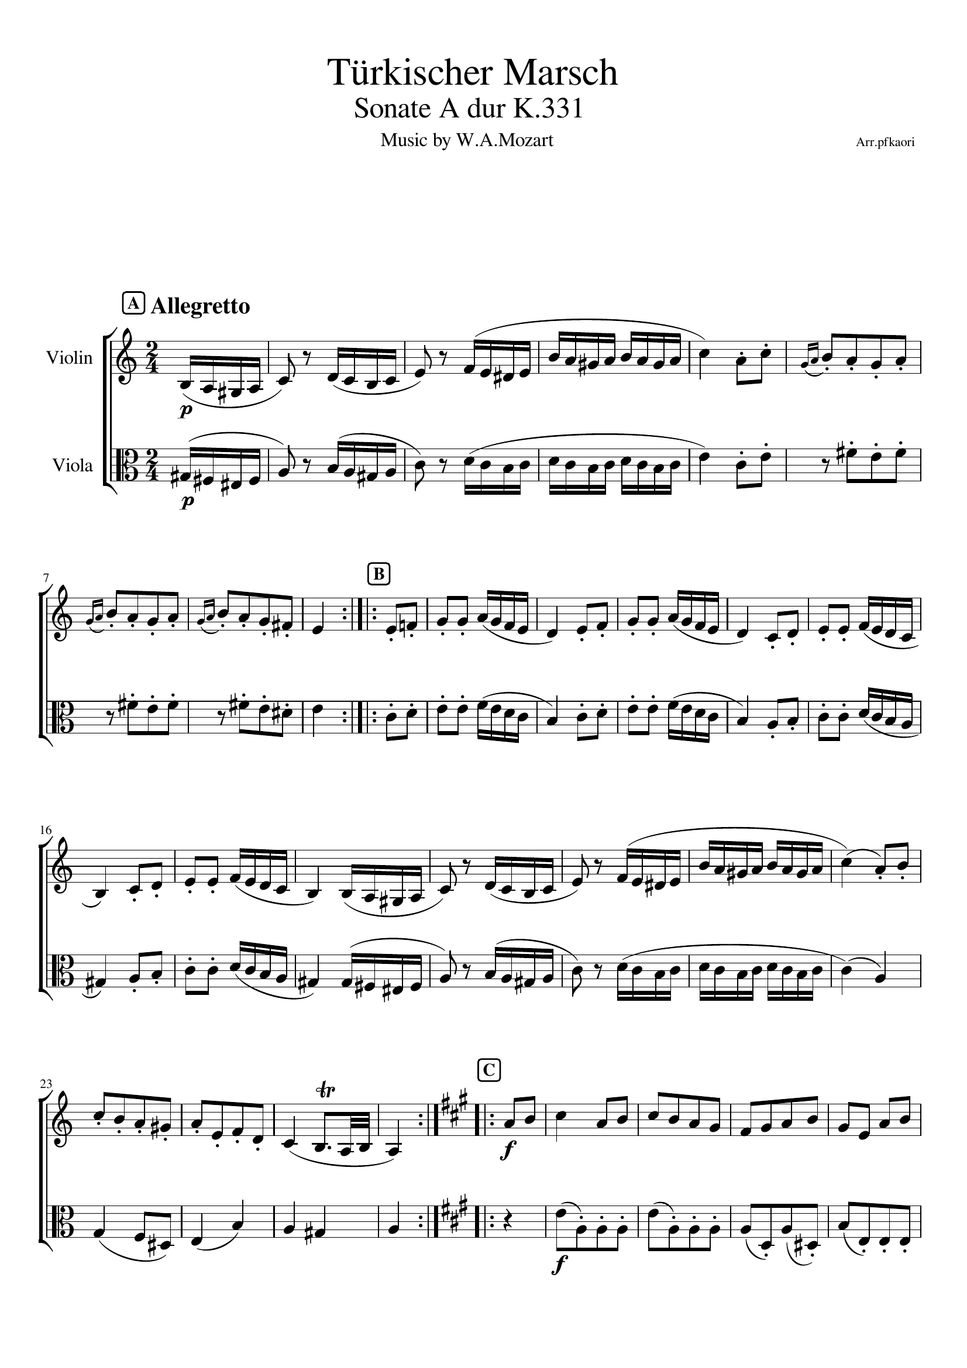 モーツァルト - トルコ行進曲 (ヴァイオリン&ヴィオラ/無伴奏) by pfkaori